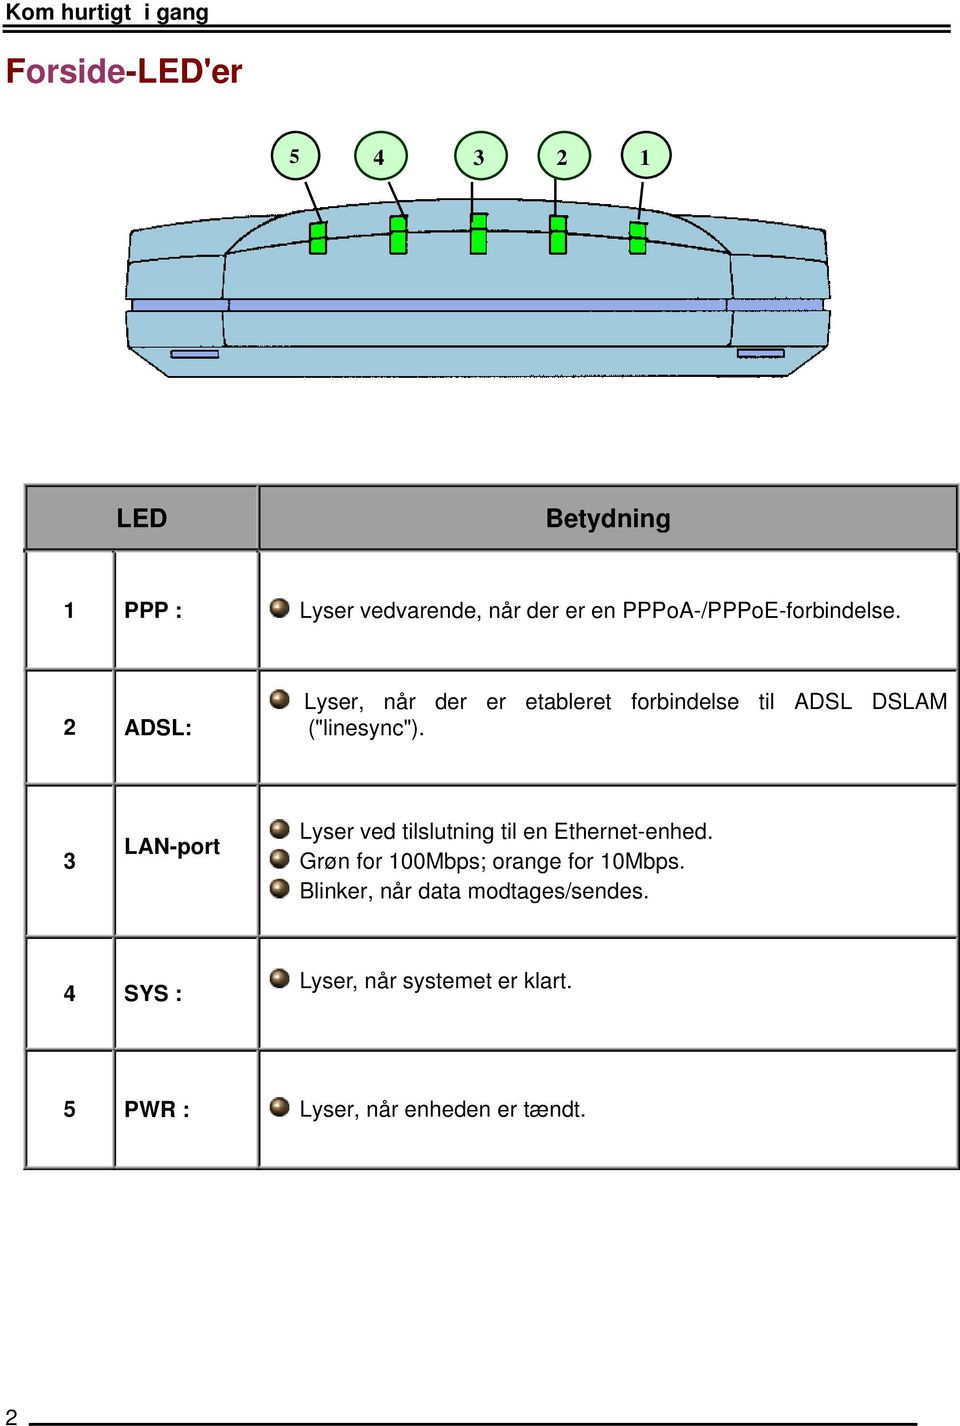 3 LAN-port Lyser ved tilslutning til en Ethernet-enhed. Grøn for 100Mbps; orange for 10Mbps.